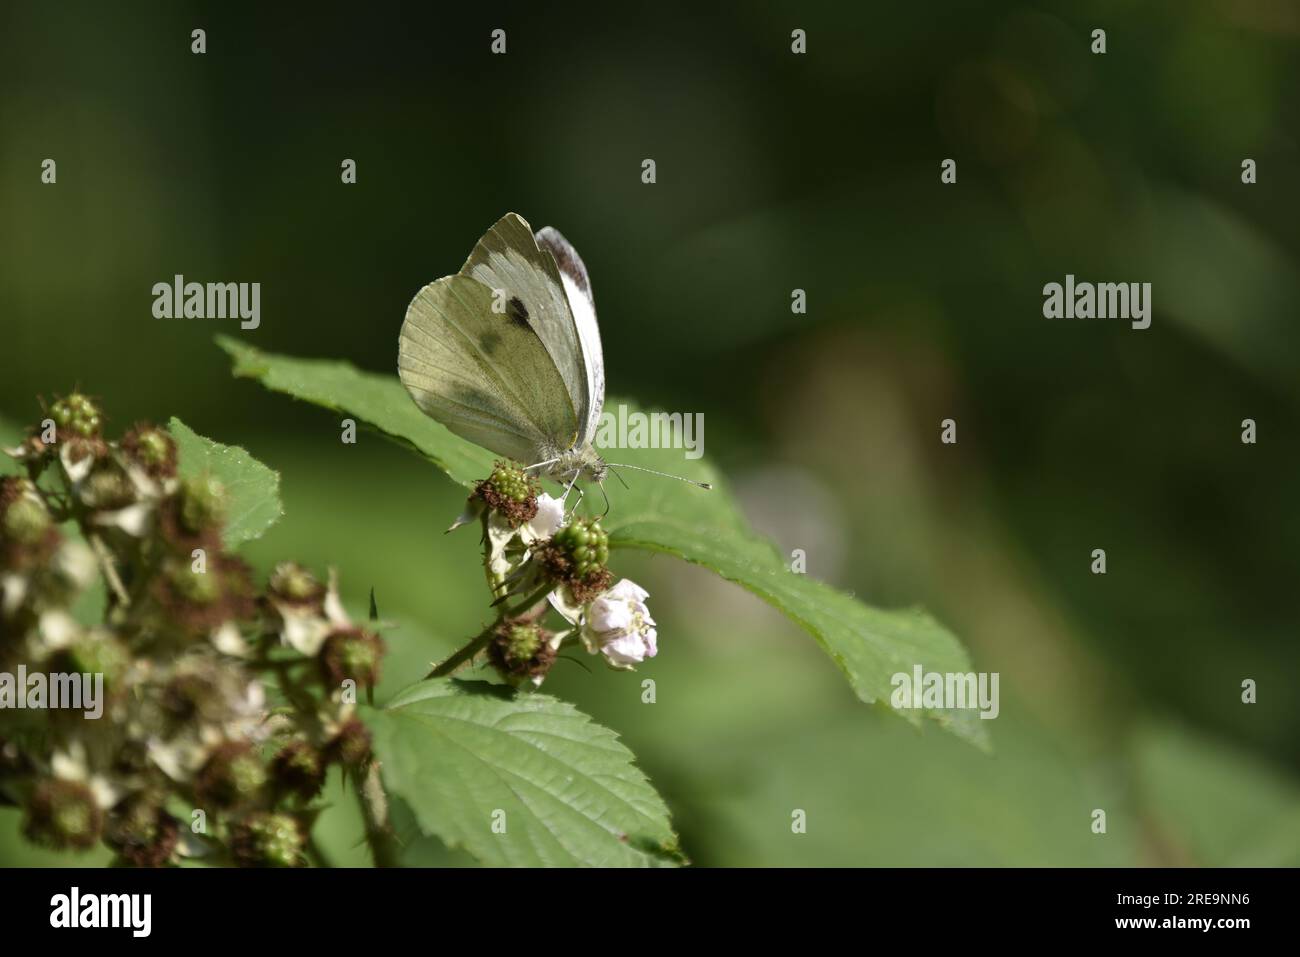 Rechtes Profil, Bild eines großen weißen Schmetterlings (Pieris brassicae) mit scharfen Gesichtsmerkmalen, hoch oben auf einer Brombeerblume, in Wales, Großbritannien Stockfoto